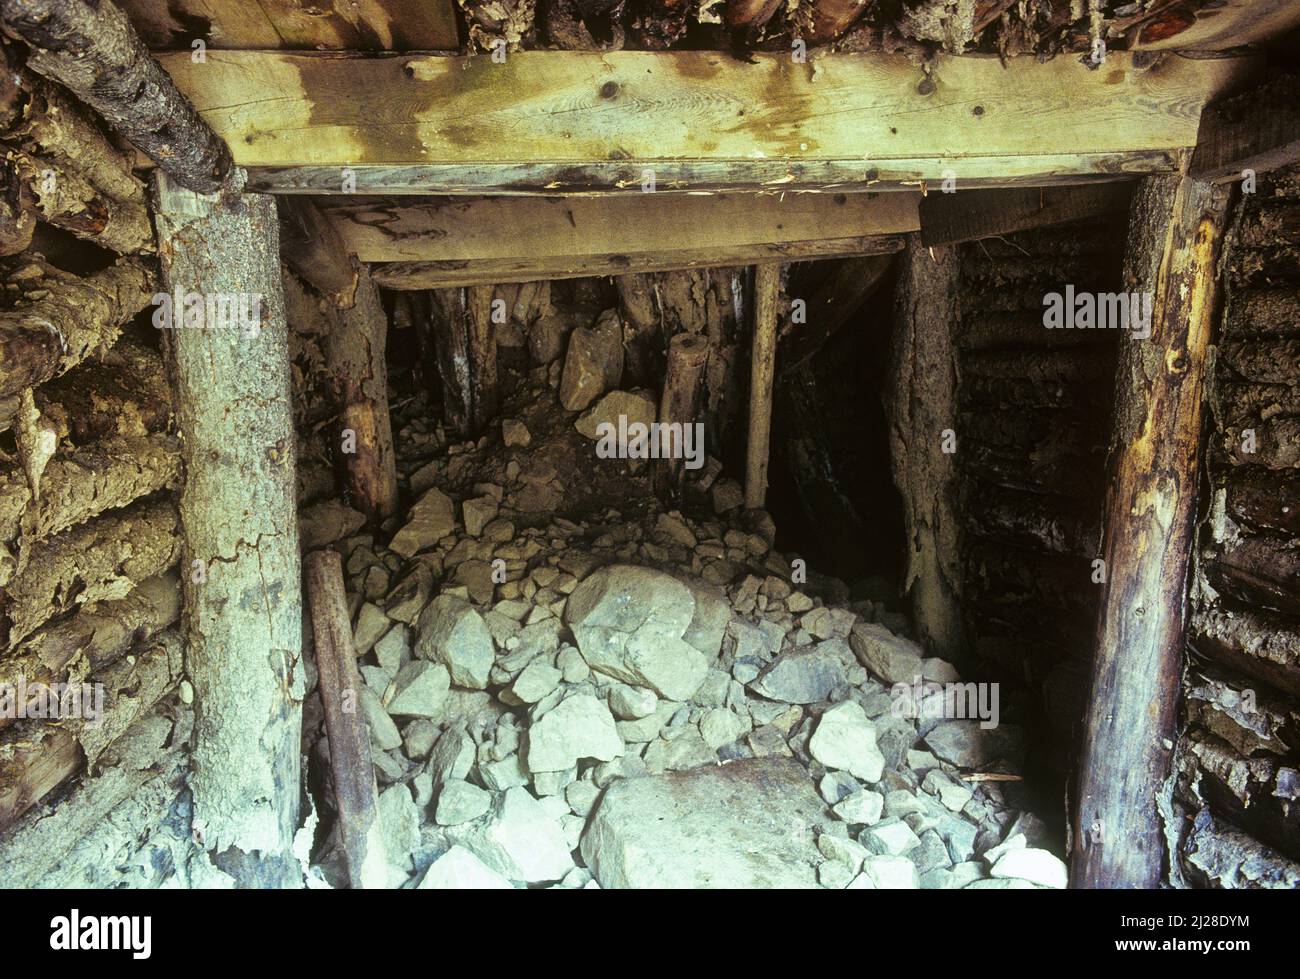 CO: Condado de Clear Creek, Bosque Nacional Arapahoe, Bard Creek, pozo de mina abandonado, acortado con maderas, con entrada de cueva. [Pregunte por #138,041.] Foto de stock